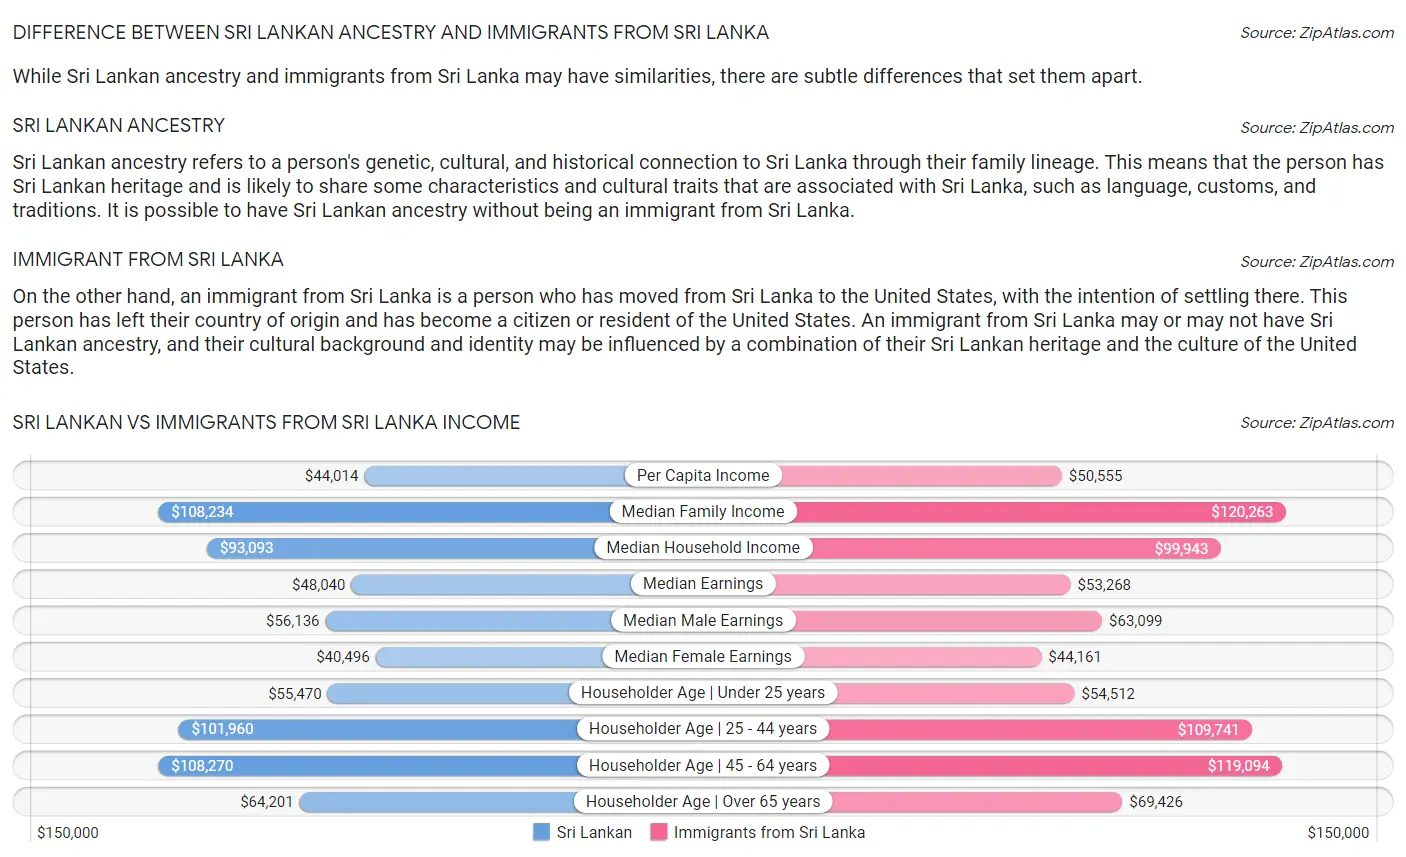 Sri Lankan vs Immigrants from Sri Lanka Income